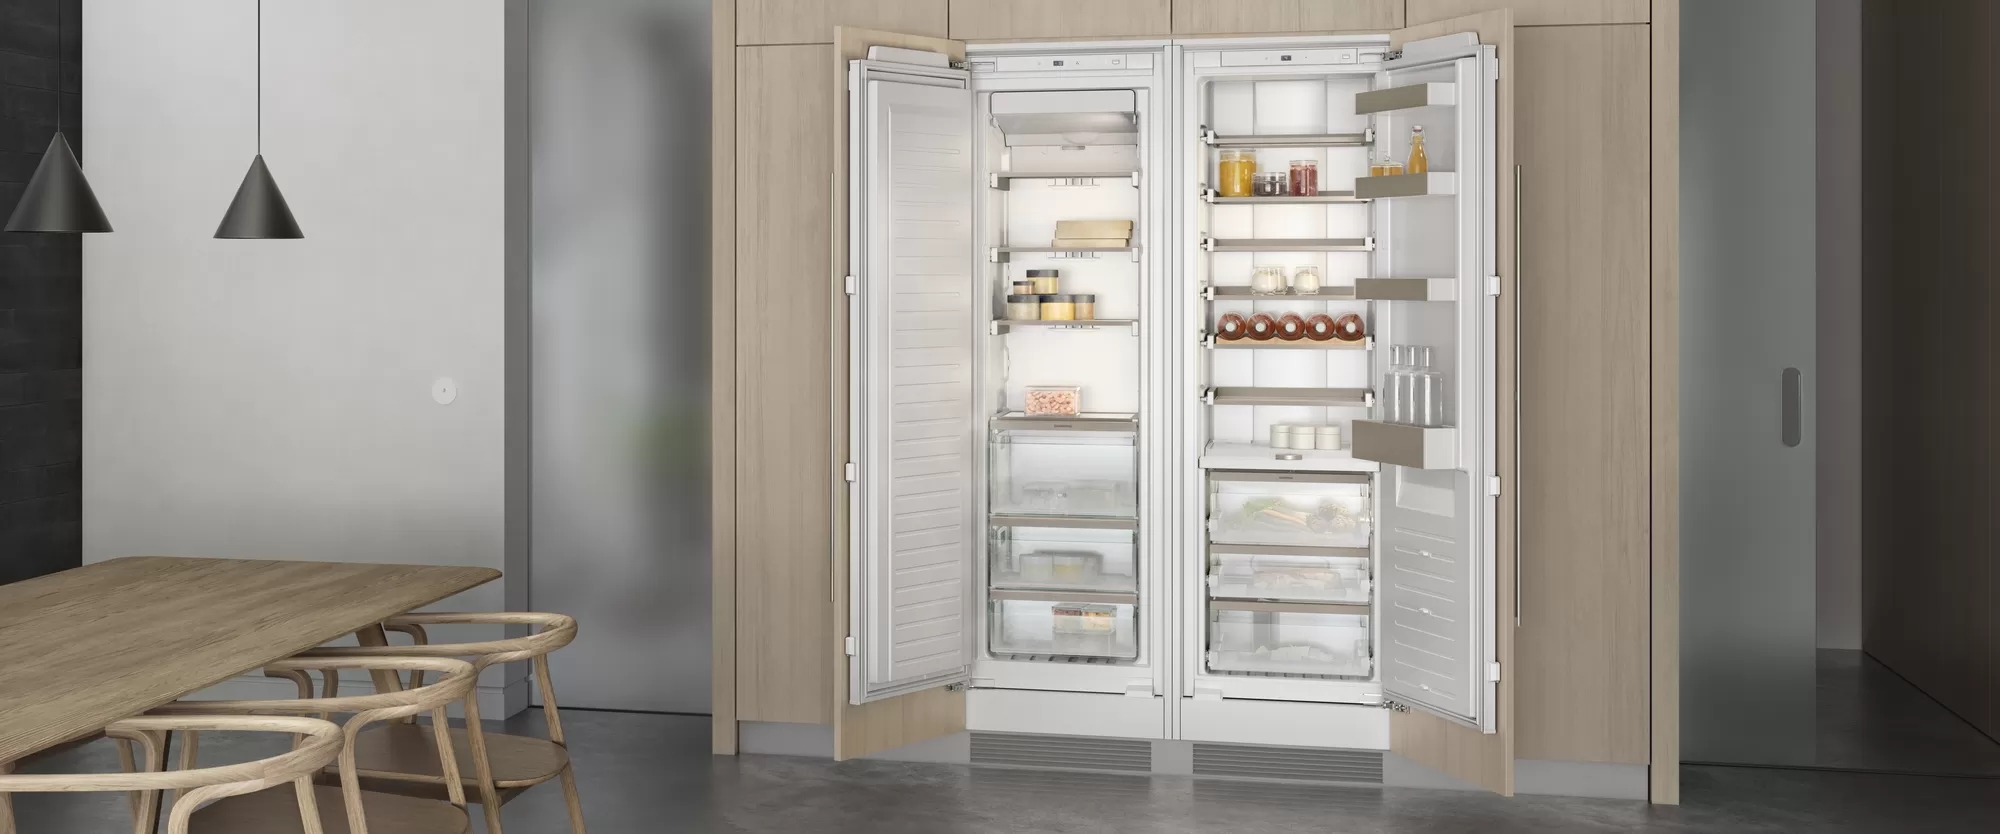 Gaggenau хладилник серия 200